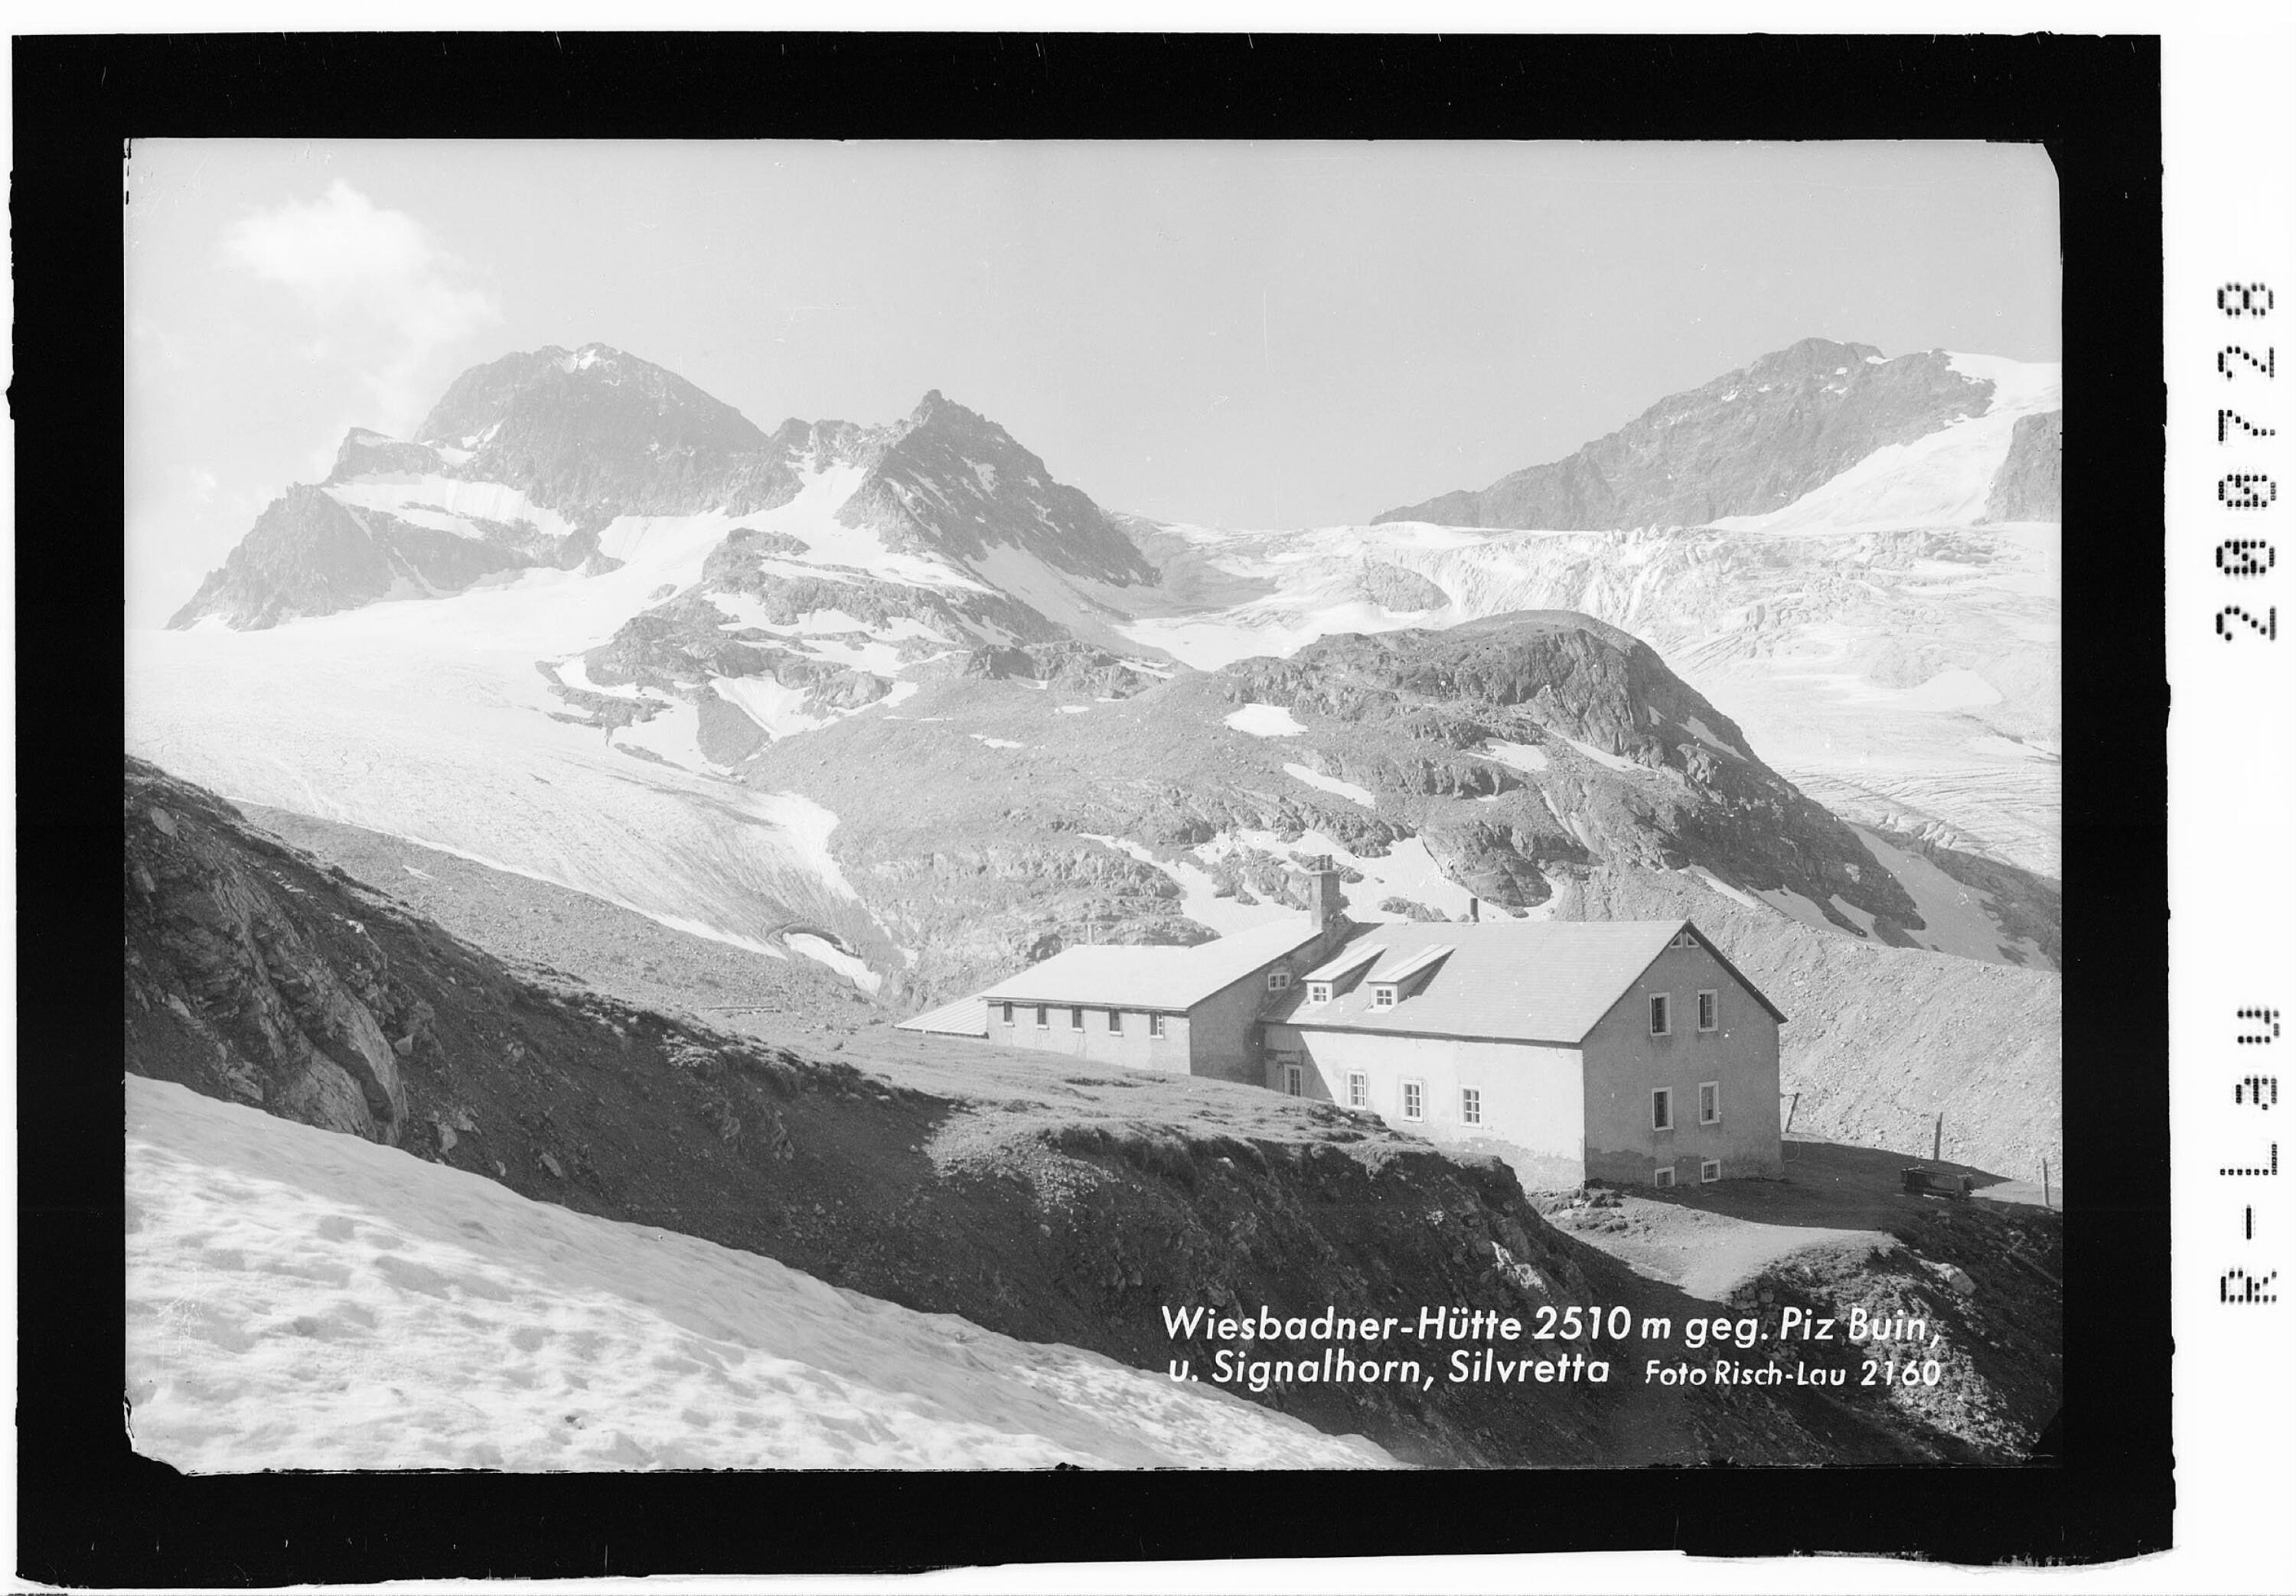 Wiesbadner-Hütte 2510 m gegen Piz Buin und Signalhorn Silvretta></div>


    <hr>
    <div class=